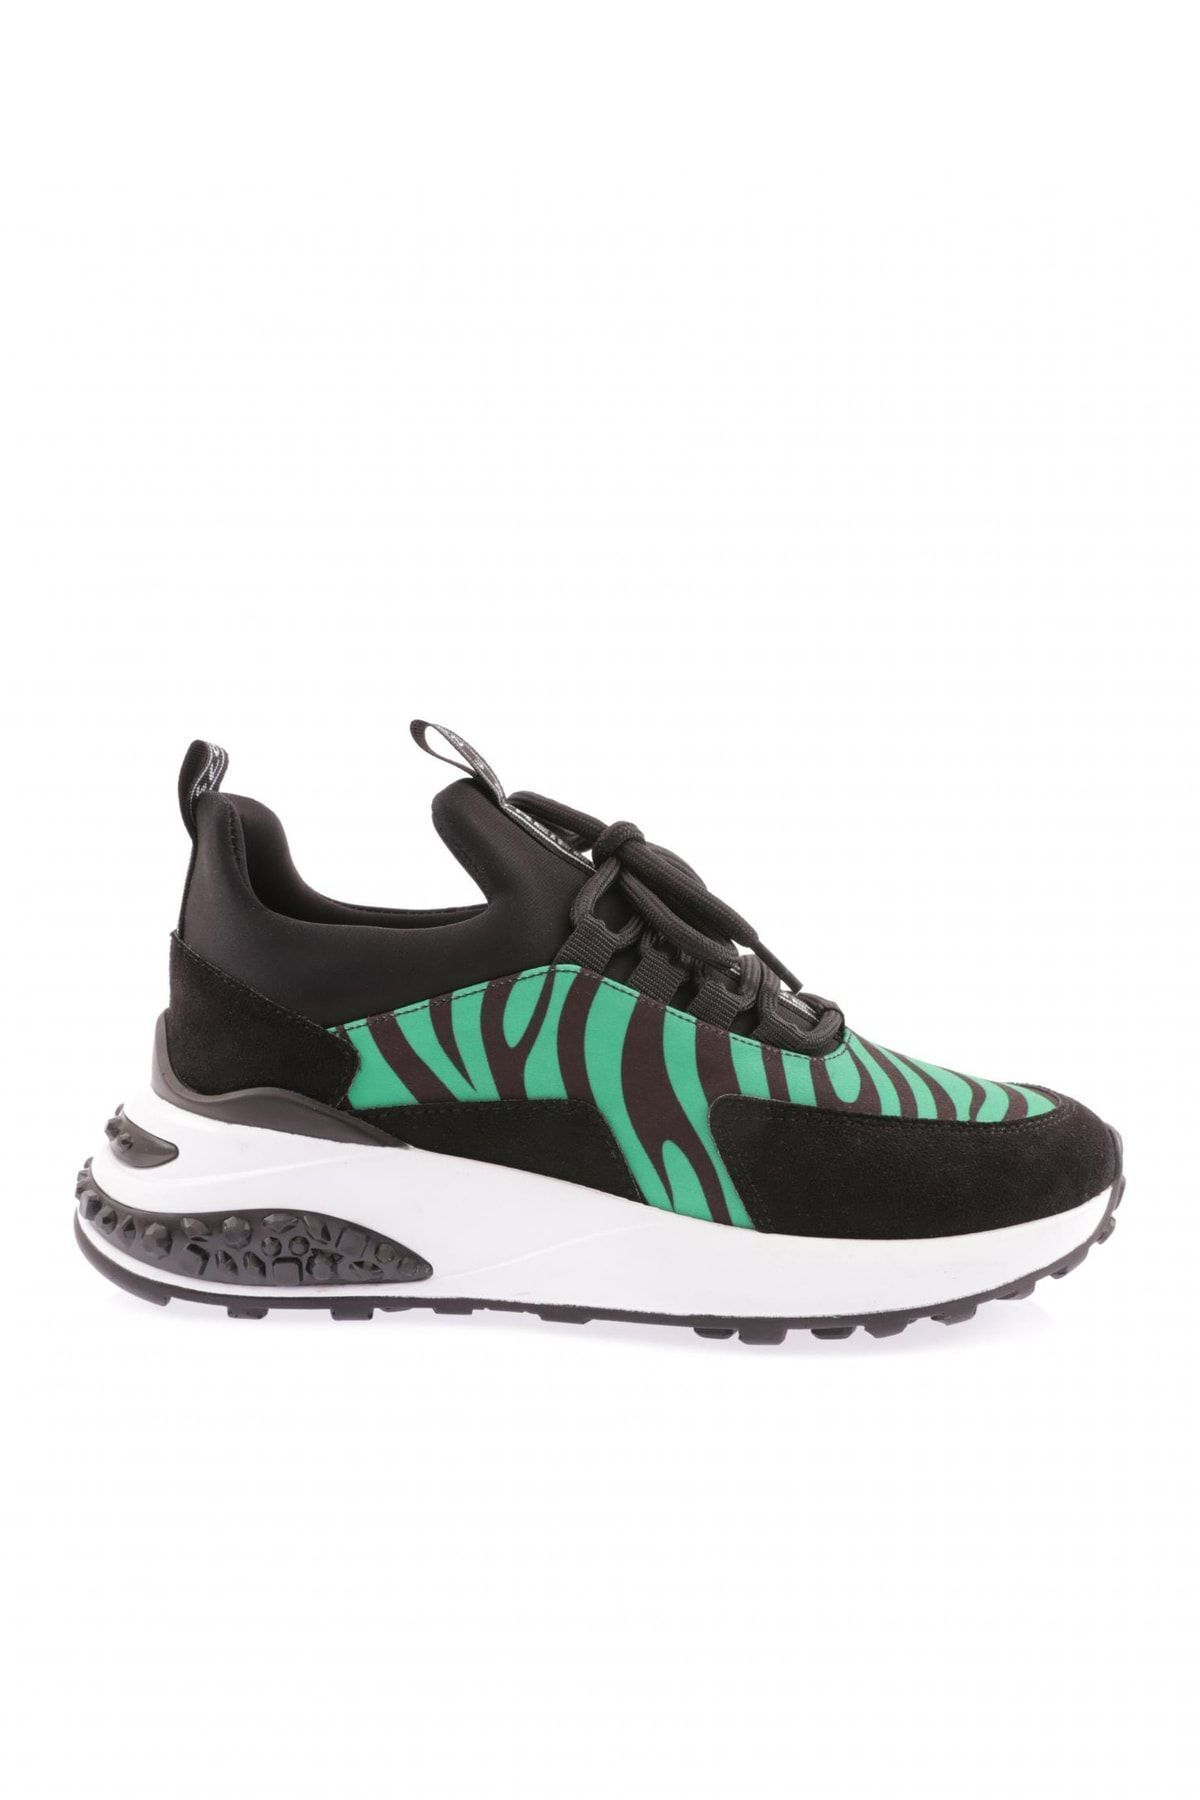 Dgn 023-22k Kadın Kalın Taban Bağcıklı Sneakers Ayakkabı Yeşil Zebra